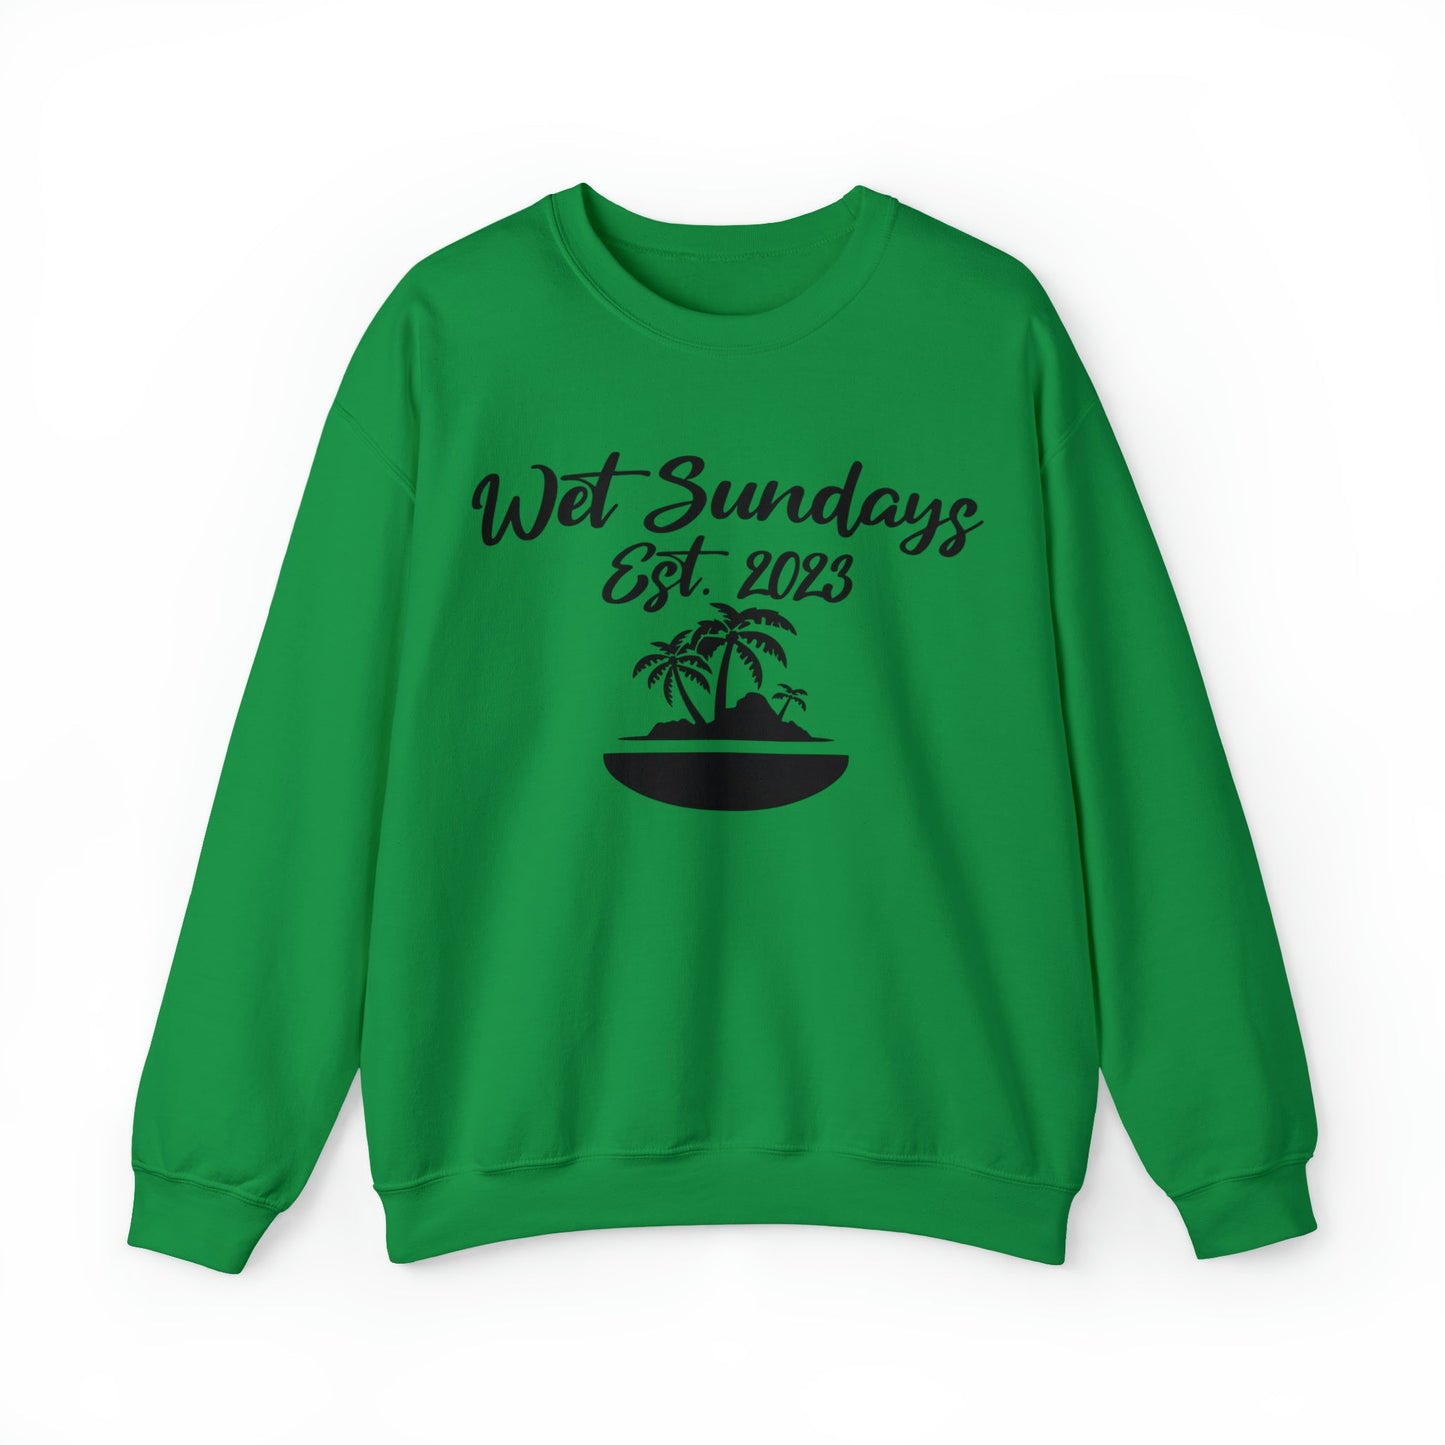 WS Island Vibes Sailing Sweatshirt - Wet Sundays